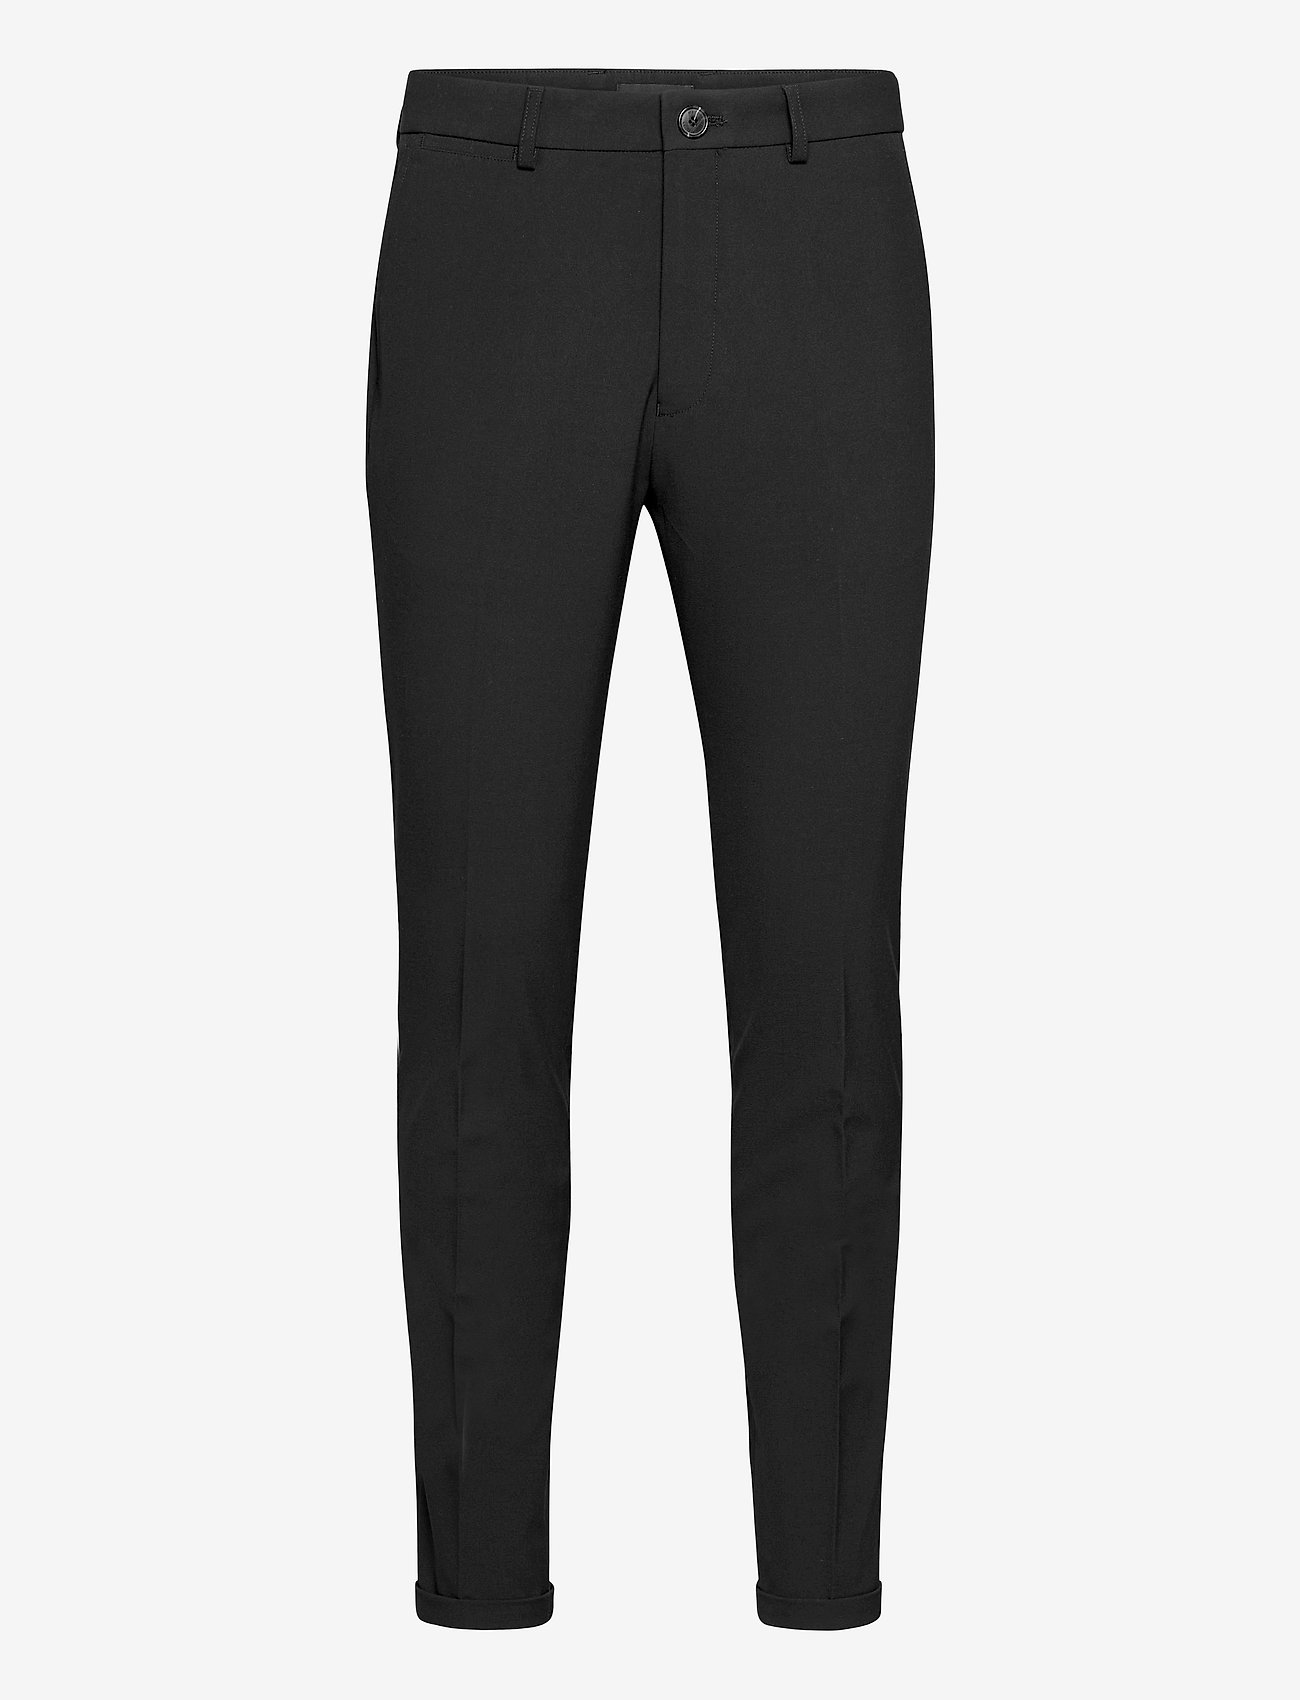 Matinique - MAliam Pant - suit trousers - black - 0